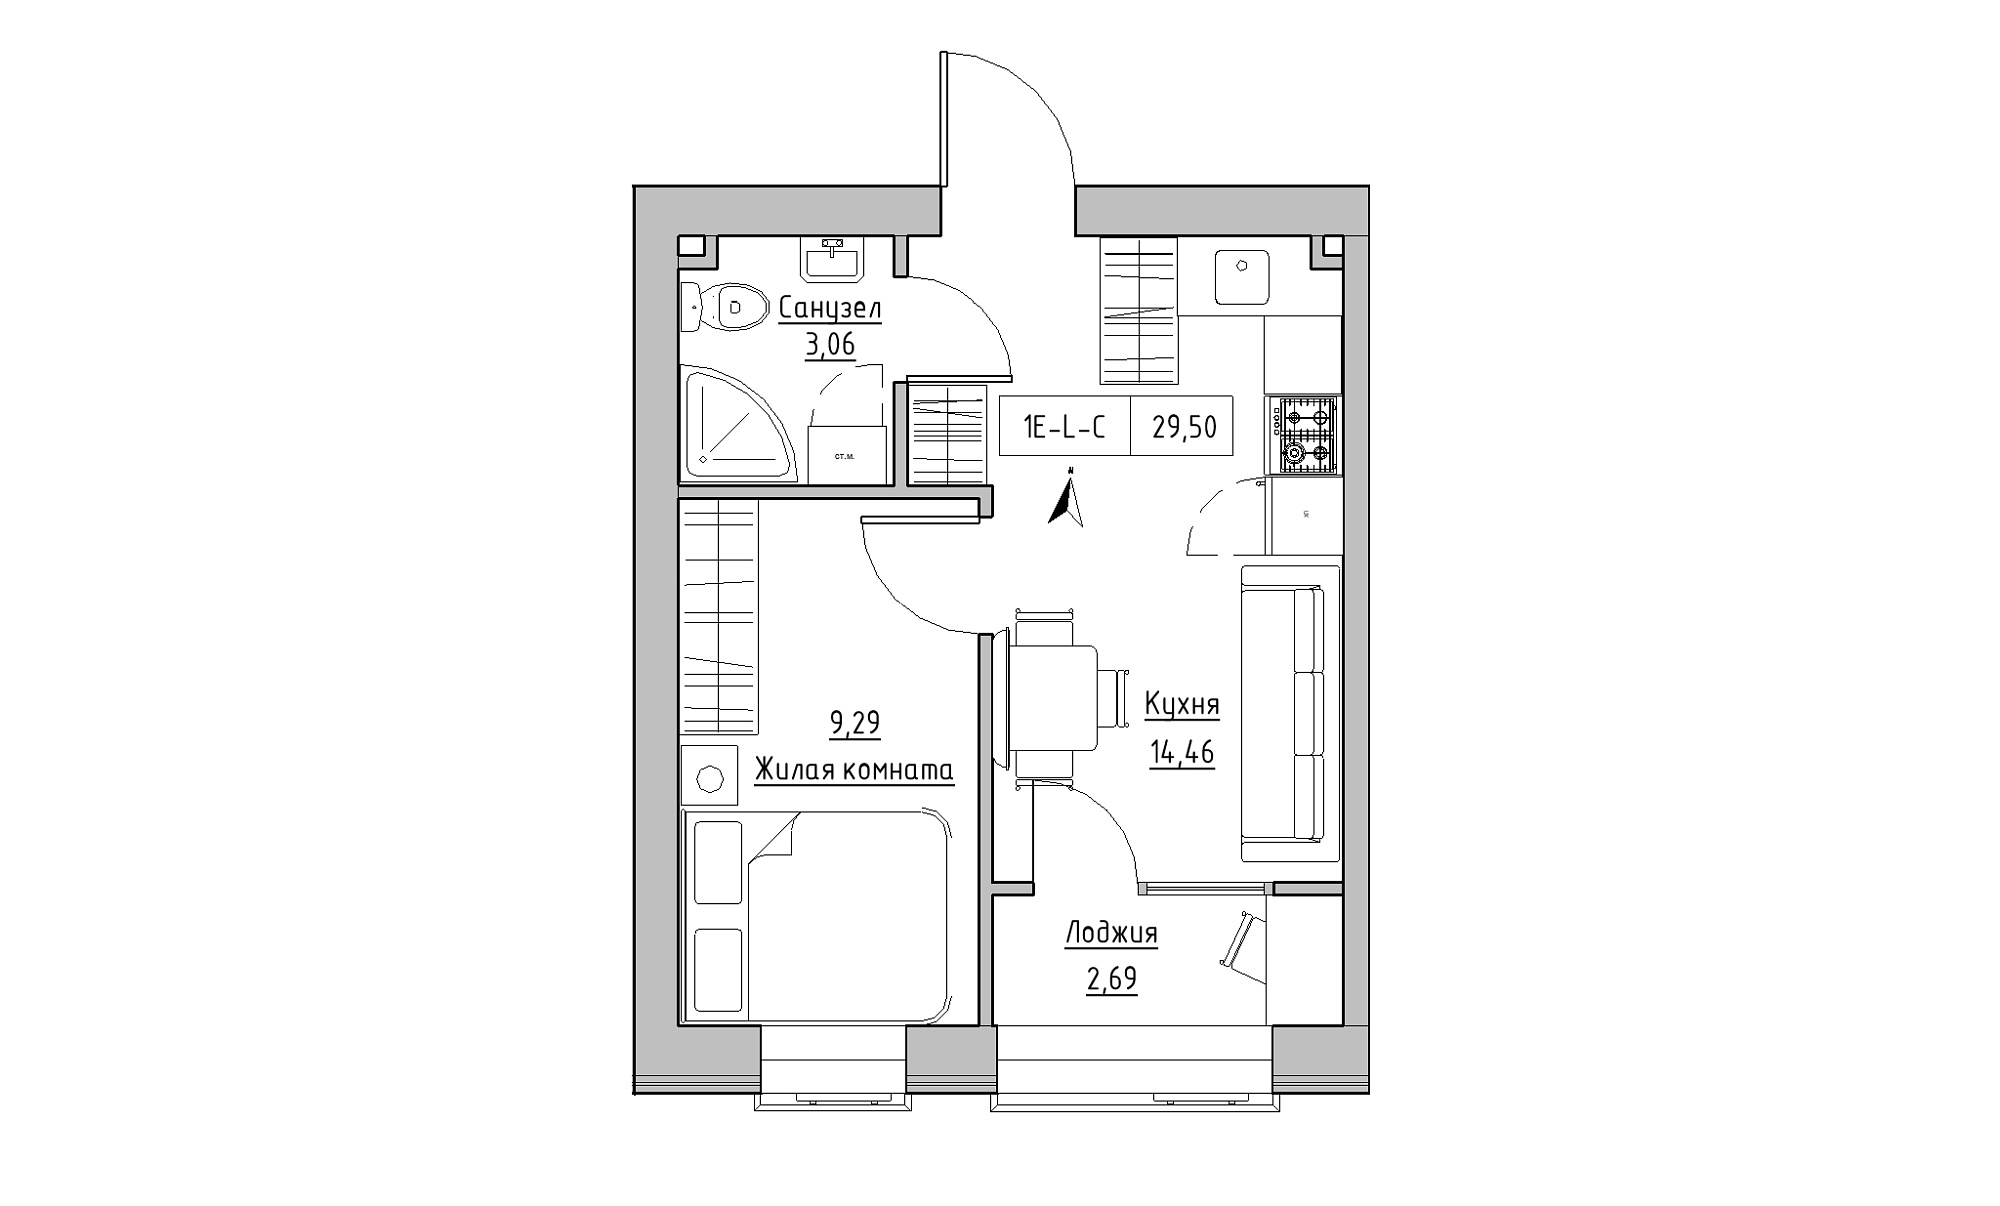 Планування 1-к квартира площею 29.5м2, KS-023-03/0011.